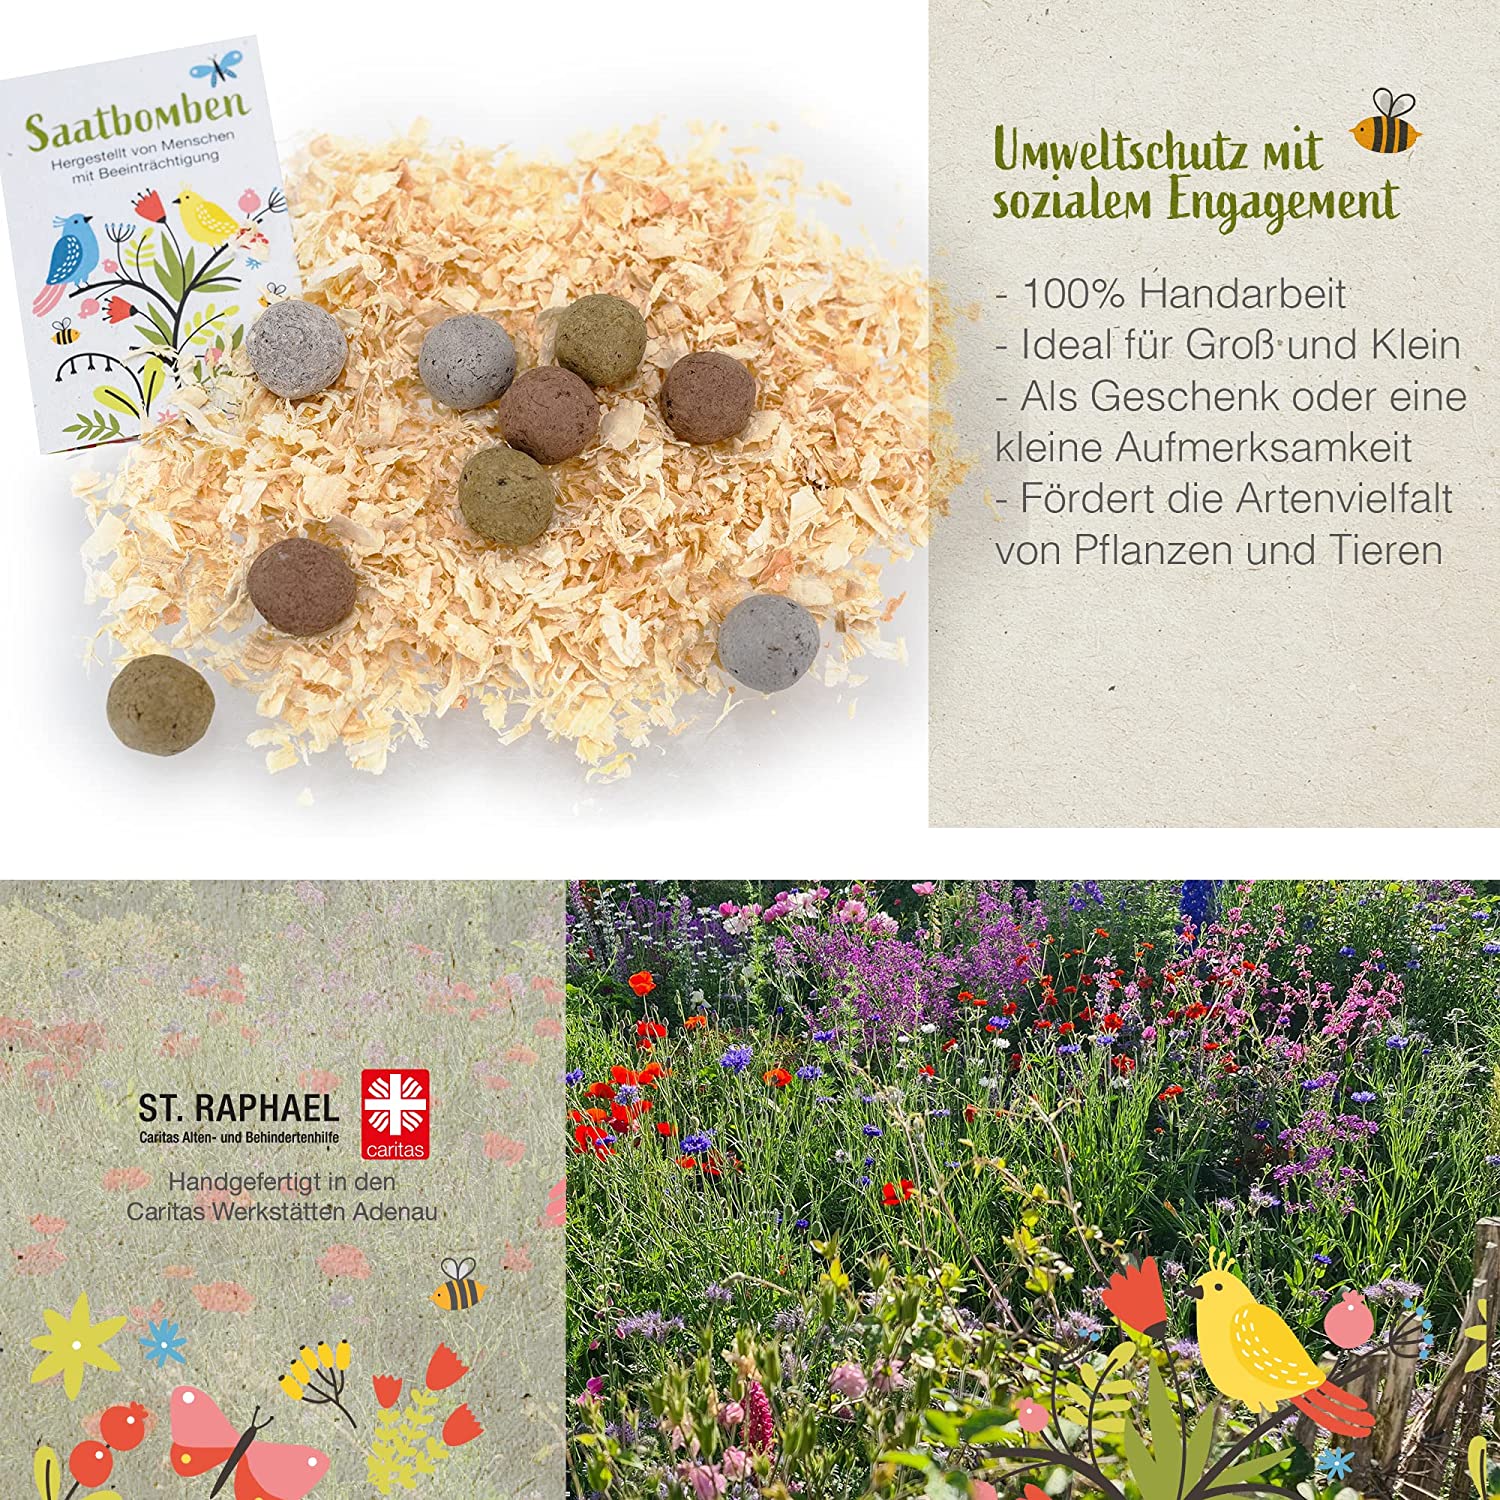 LouMaxx 15er Pack handgemachte bunte Samenbomben ideal als Samen Kinder Mitgebsel, Blumensamen Kugeln als nachhaltige Mitgebsel - ökologische Saatbomben mit über 50 Arten Blumen & Kräutern